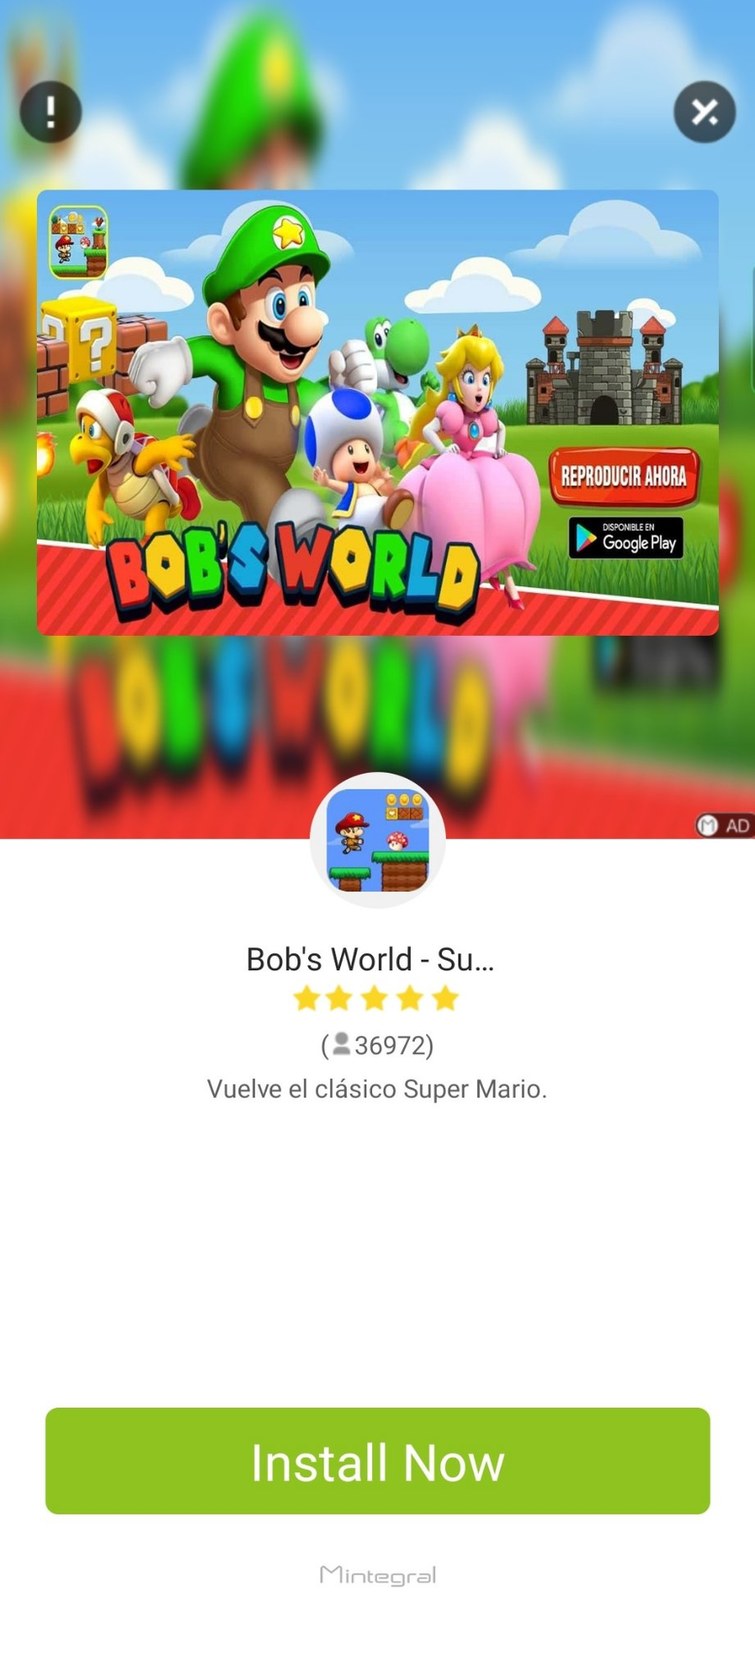 Mario copia verde estrella pero llamado Bob para que no salte el copyright juego - meme